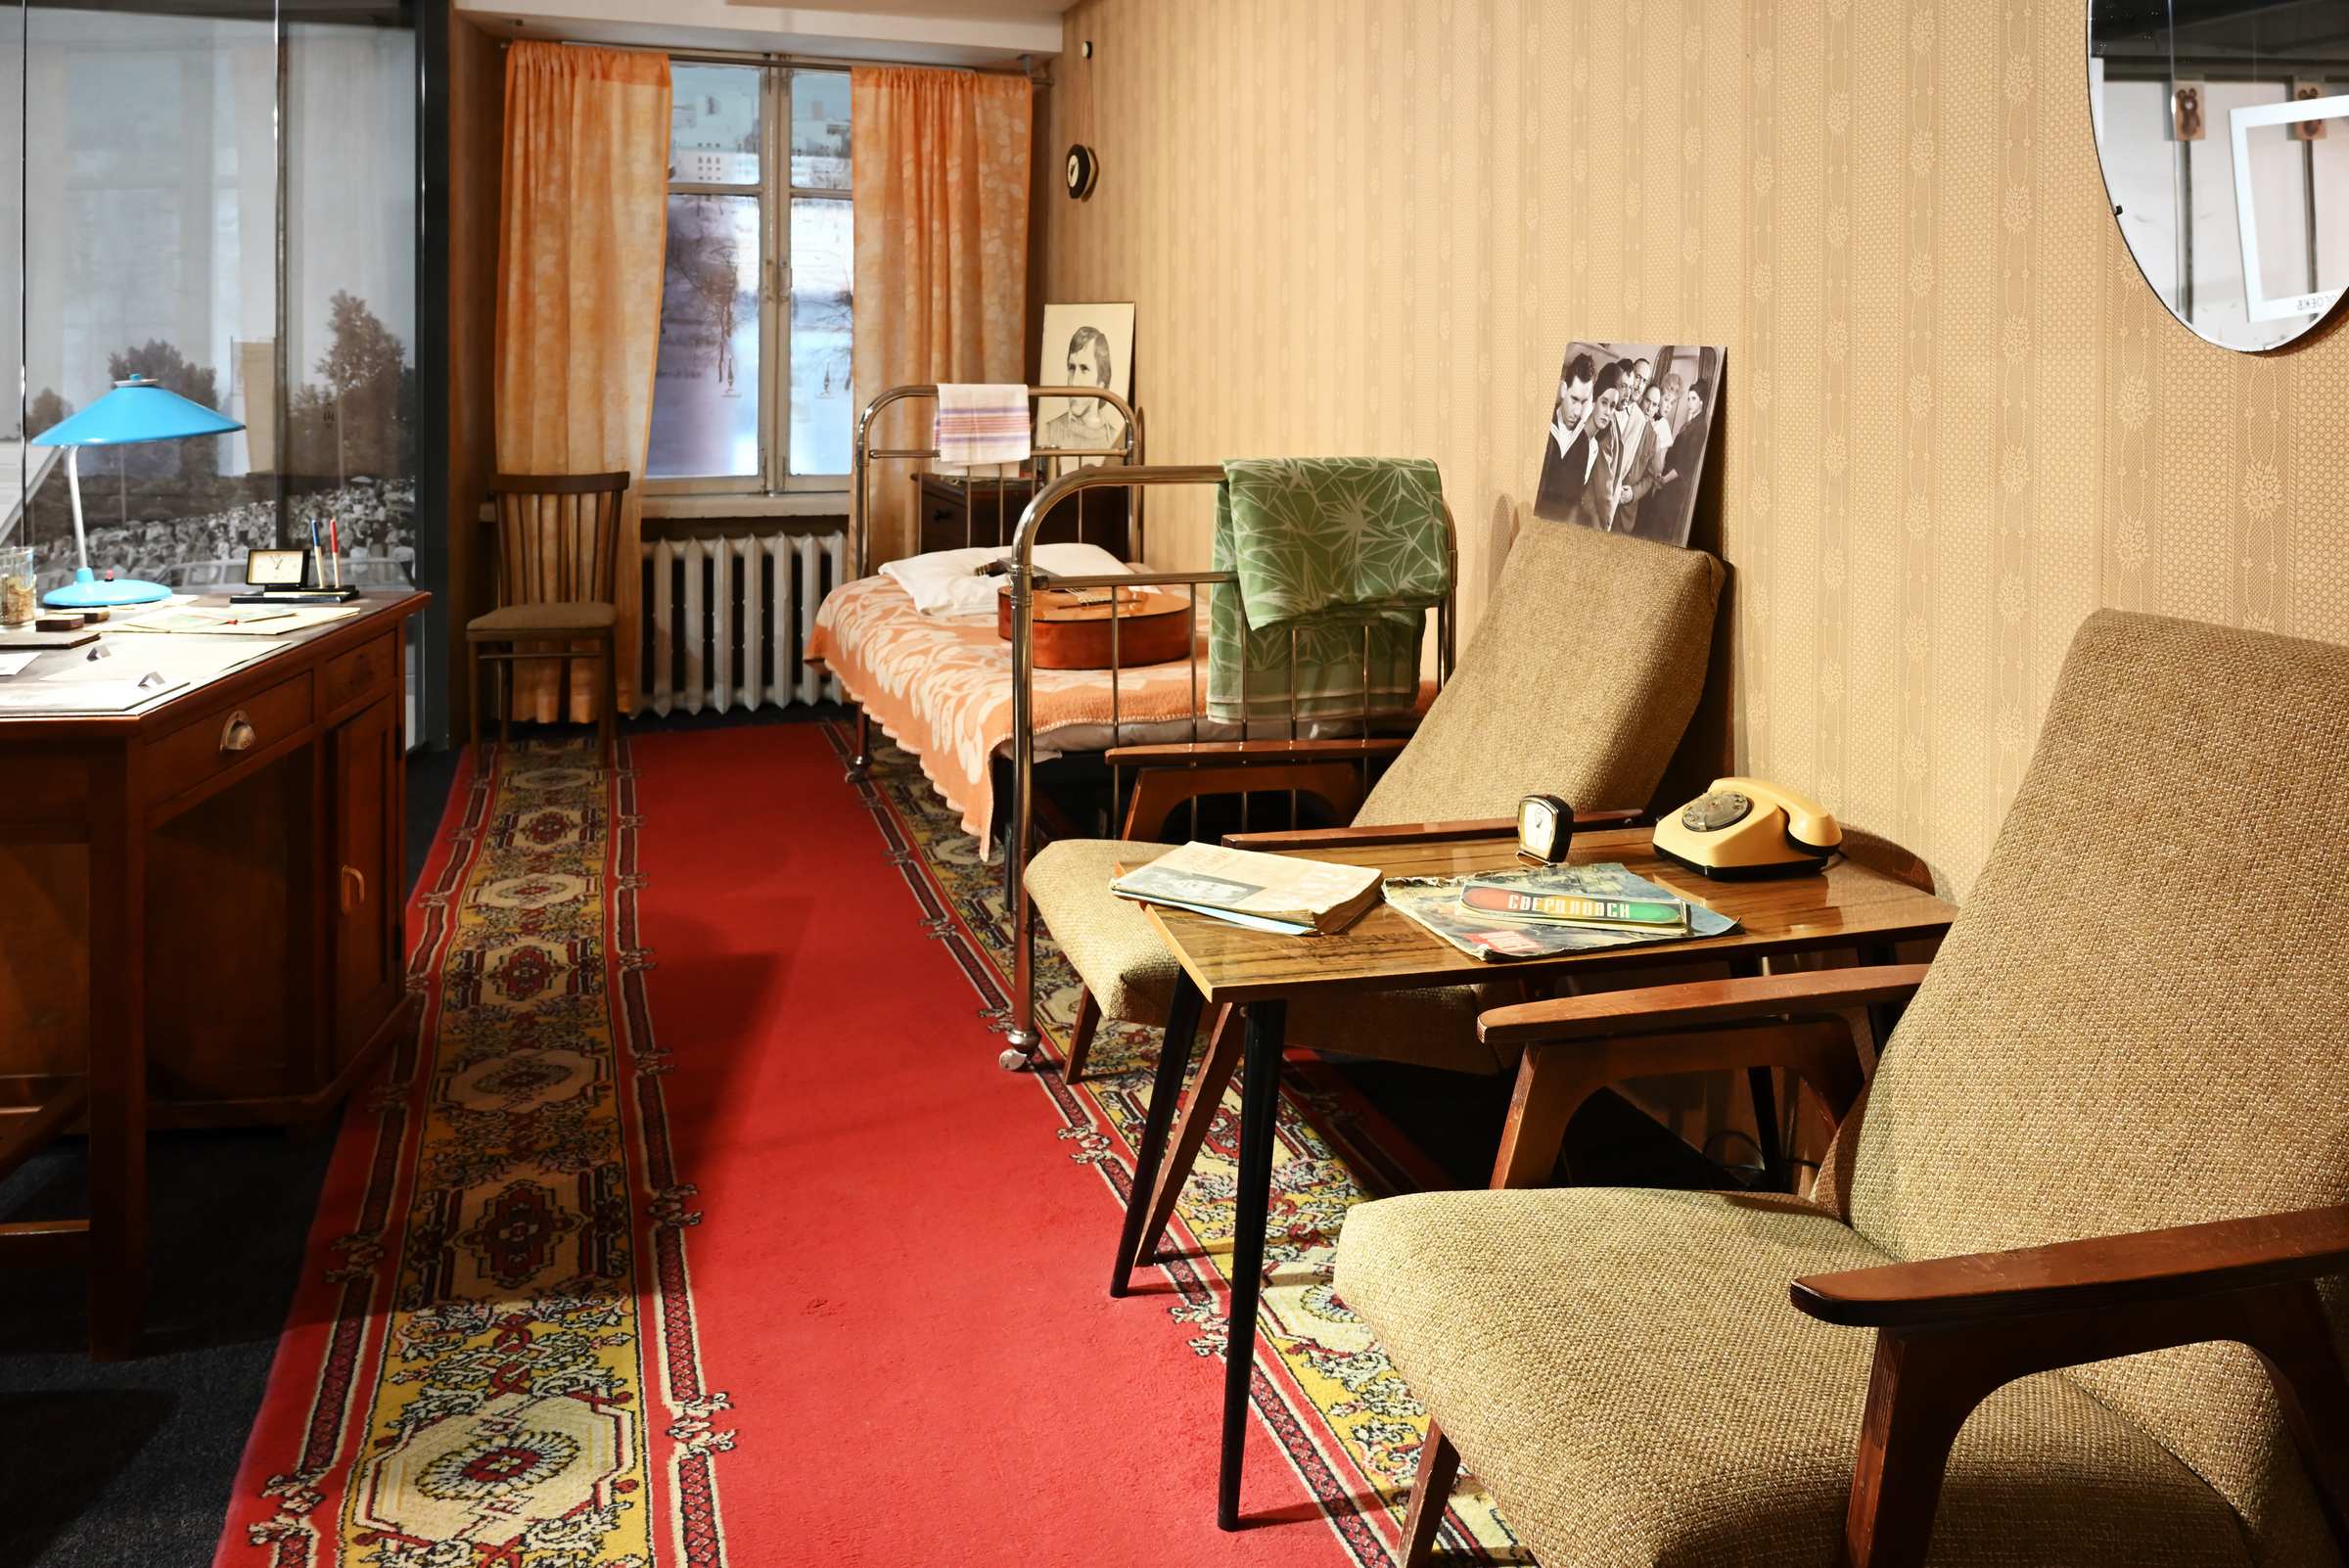 Восстановленный гостиничный номер, в котором Владимир Высоцкий останавливался, будучи на гастролях в Свердловске в 1962 году. Музей Владимира Высоцкого в Екатеринбурге.